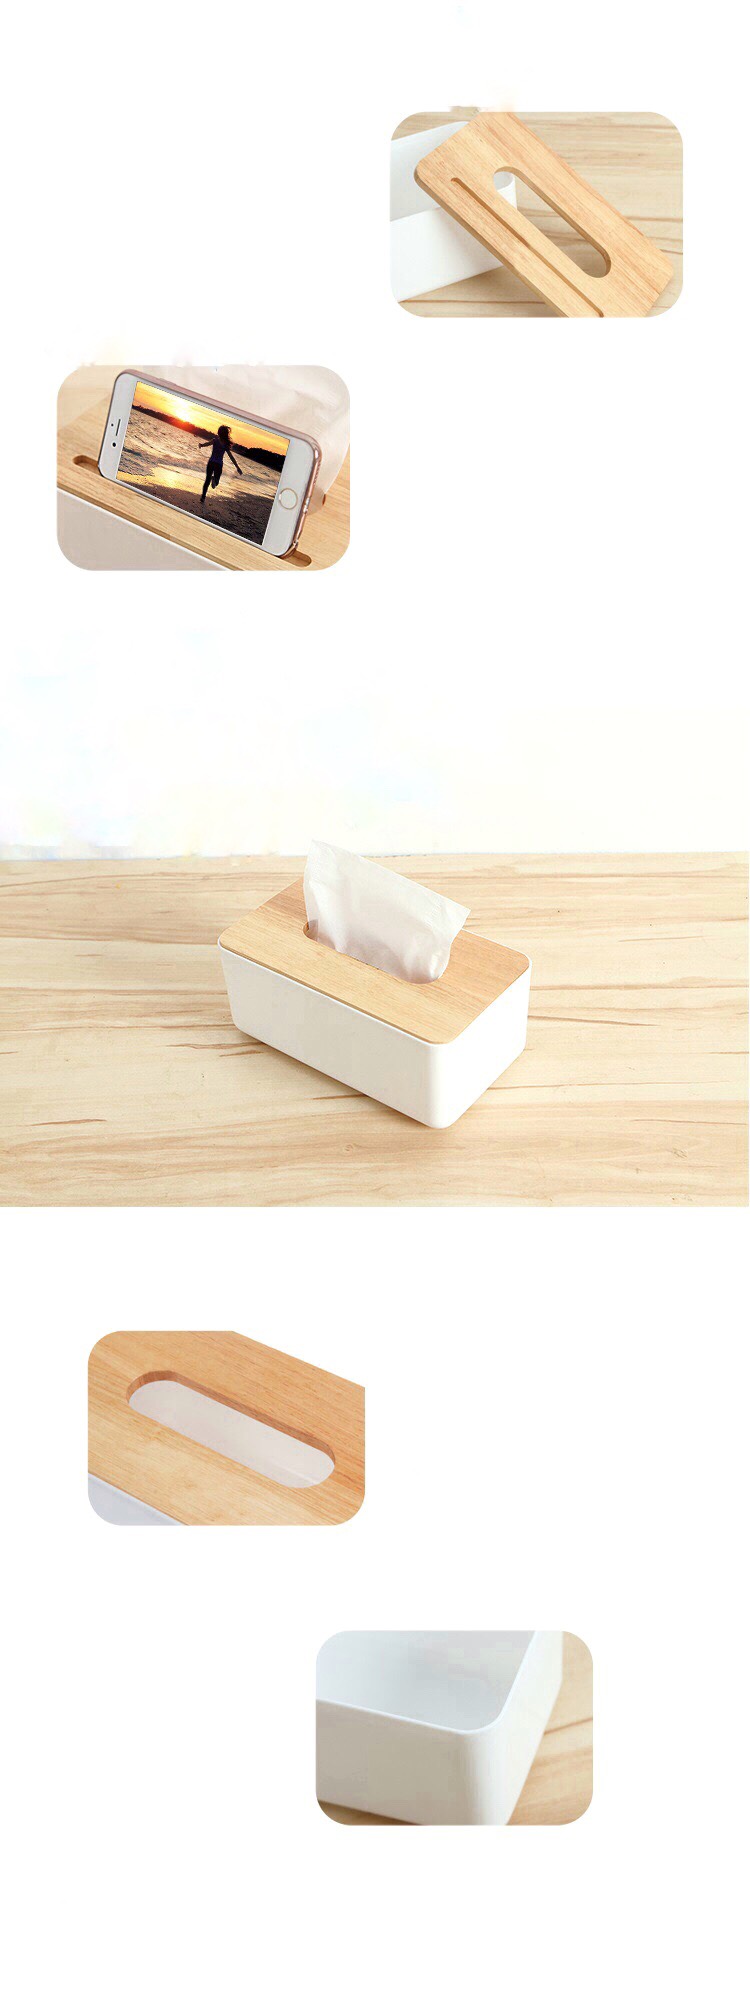 Hộp đựng giấy ăn bằng nhựa trắng kết hợp mặt gỗ phong cách hàn quốc